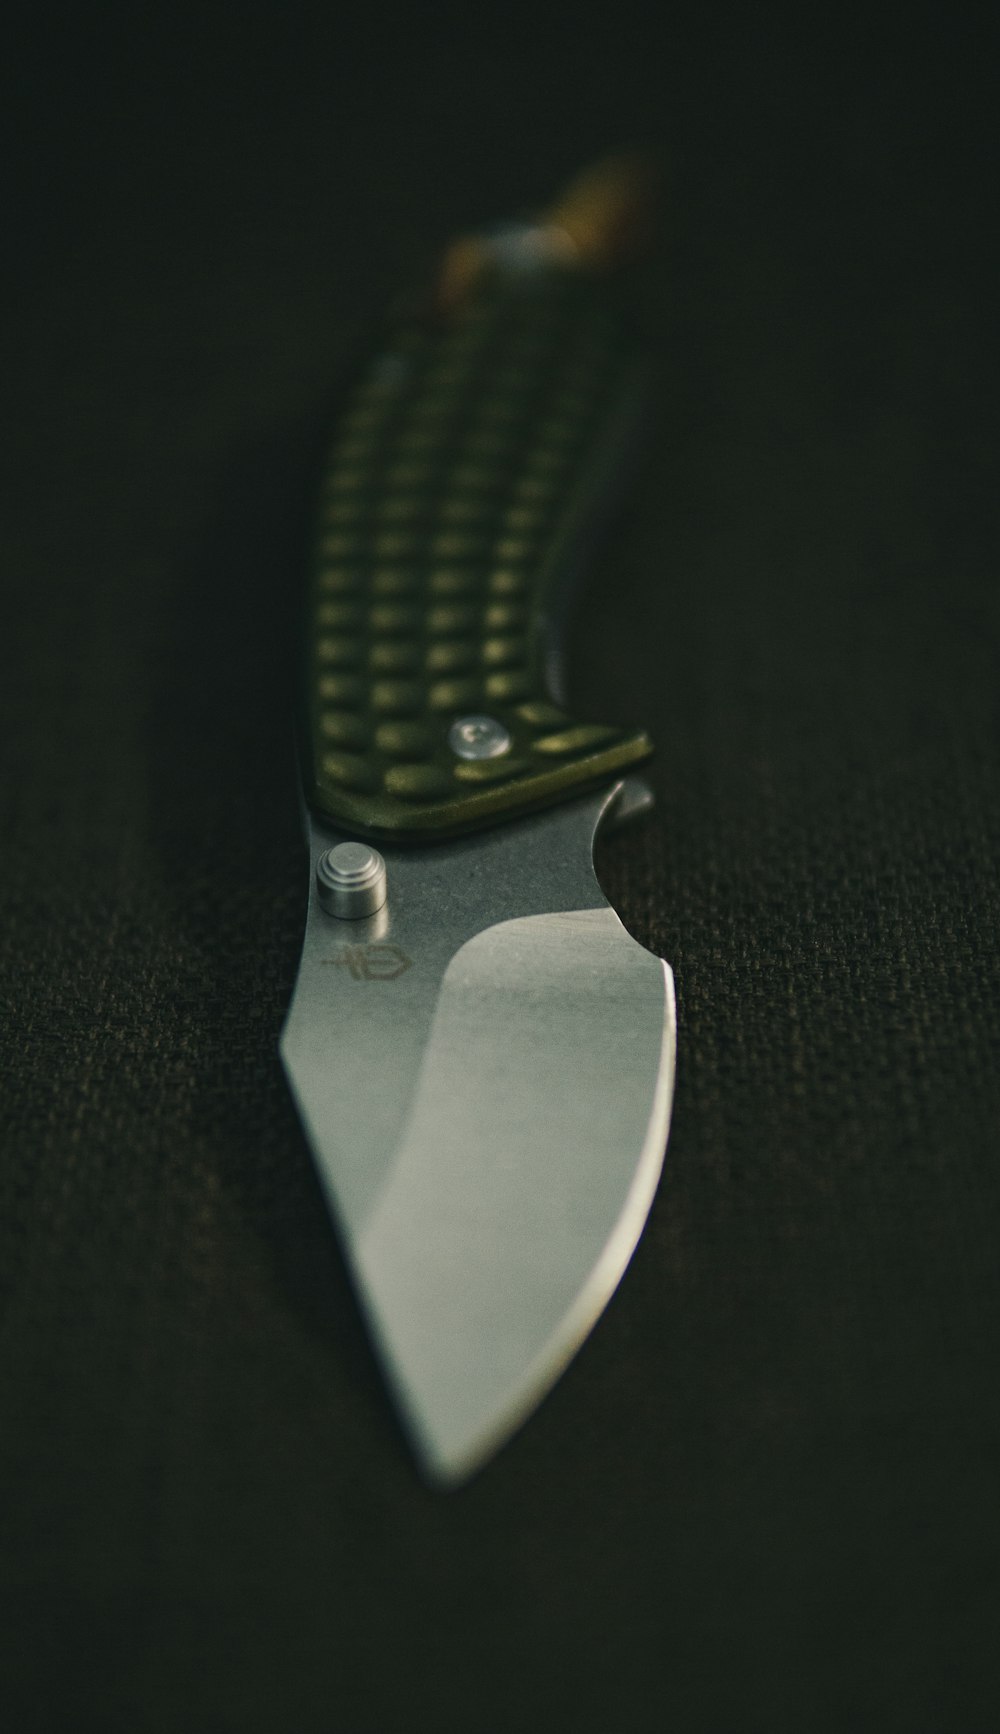 silver pocket knife on black textile